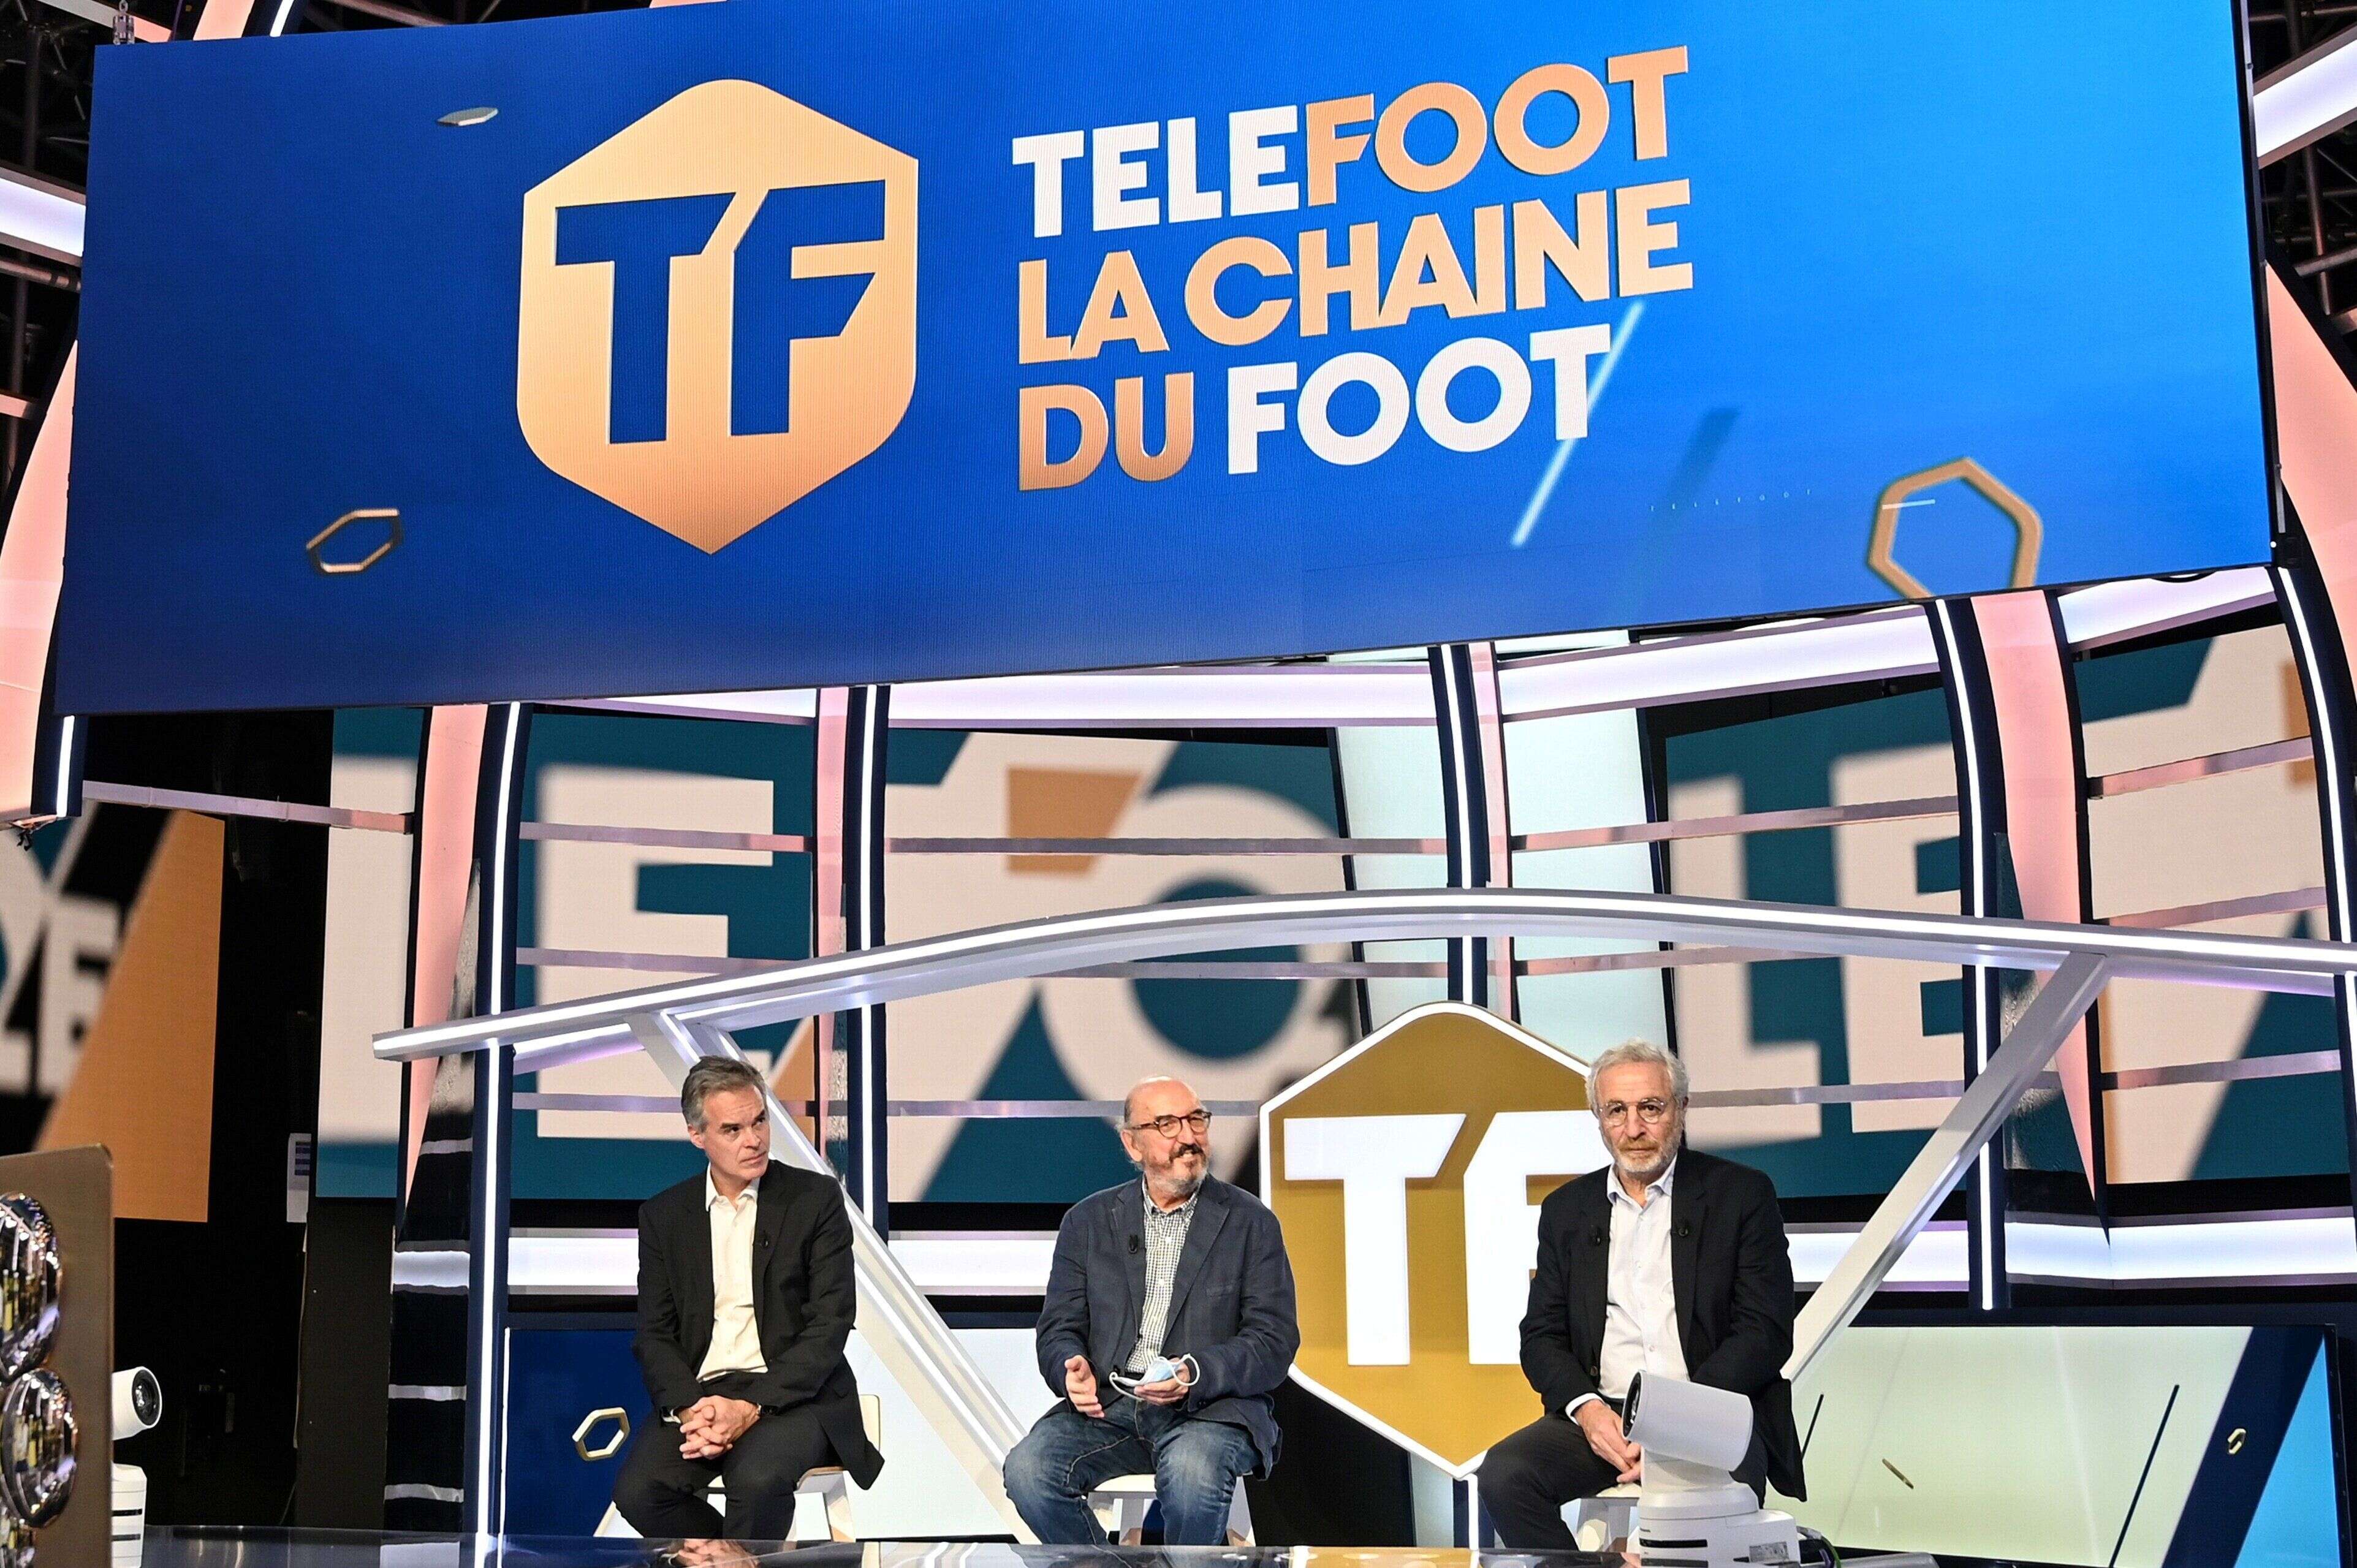 Les dirigeants de Mediapro présentant la chaîne Téléfoot lors d'une conférence de presse en août 2020.